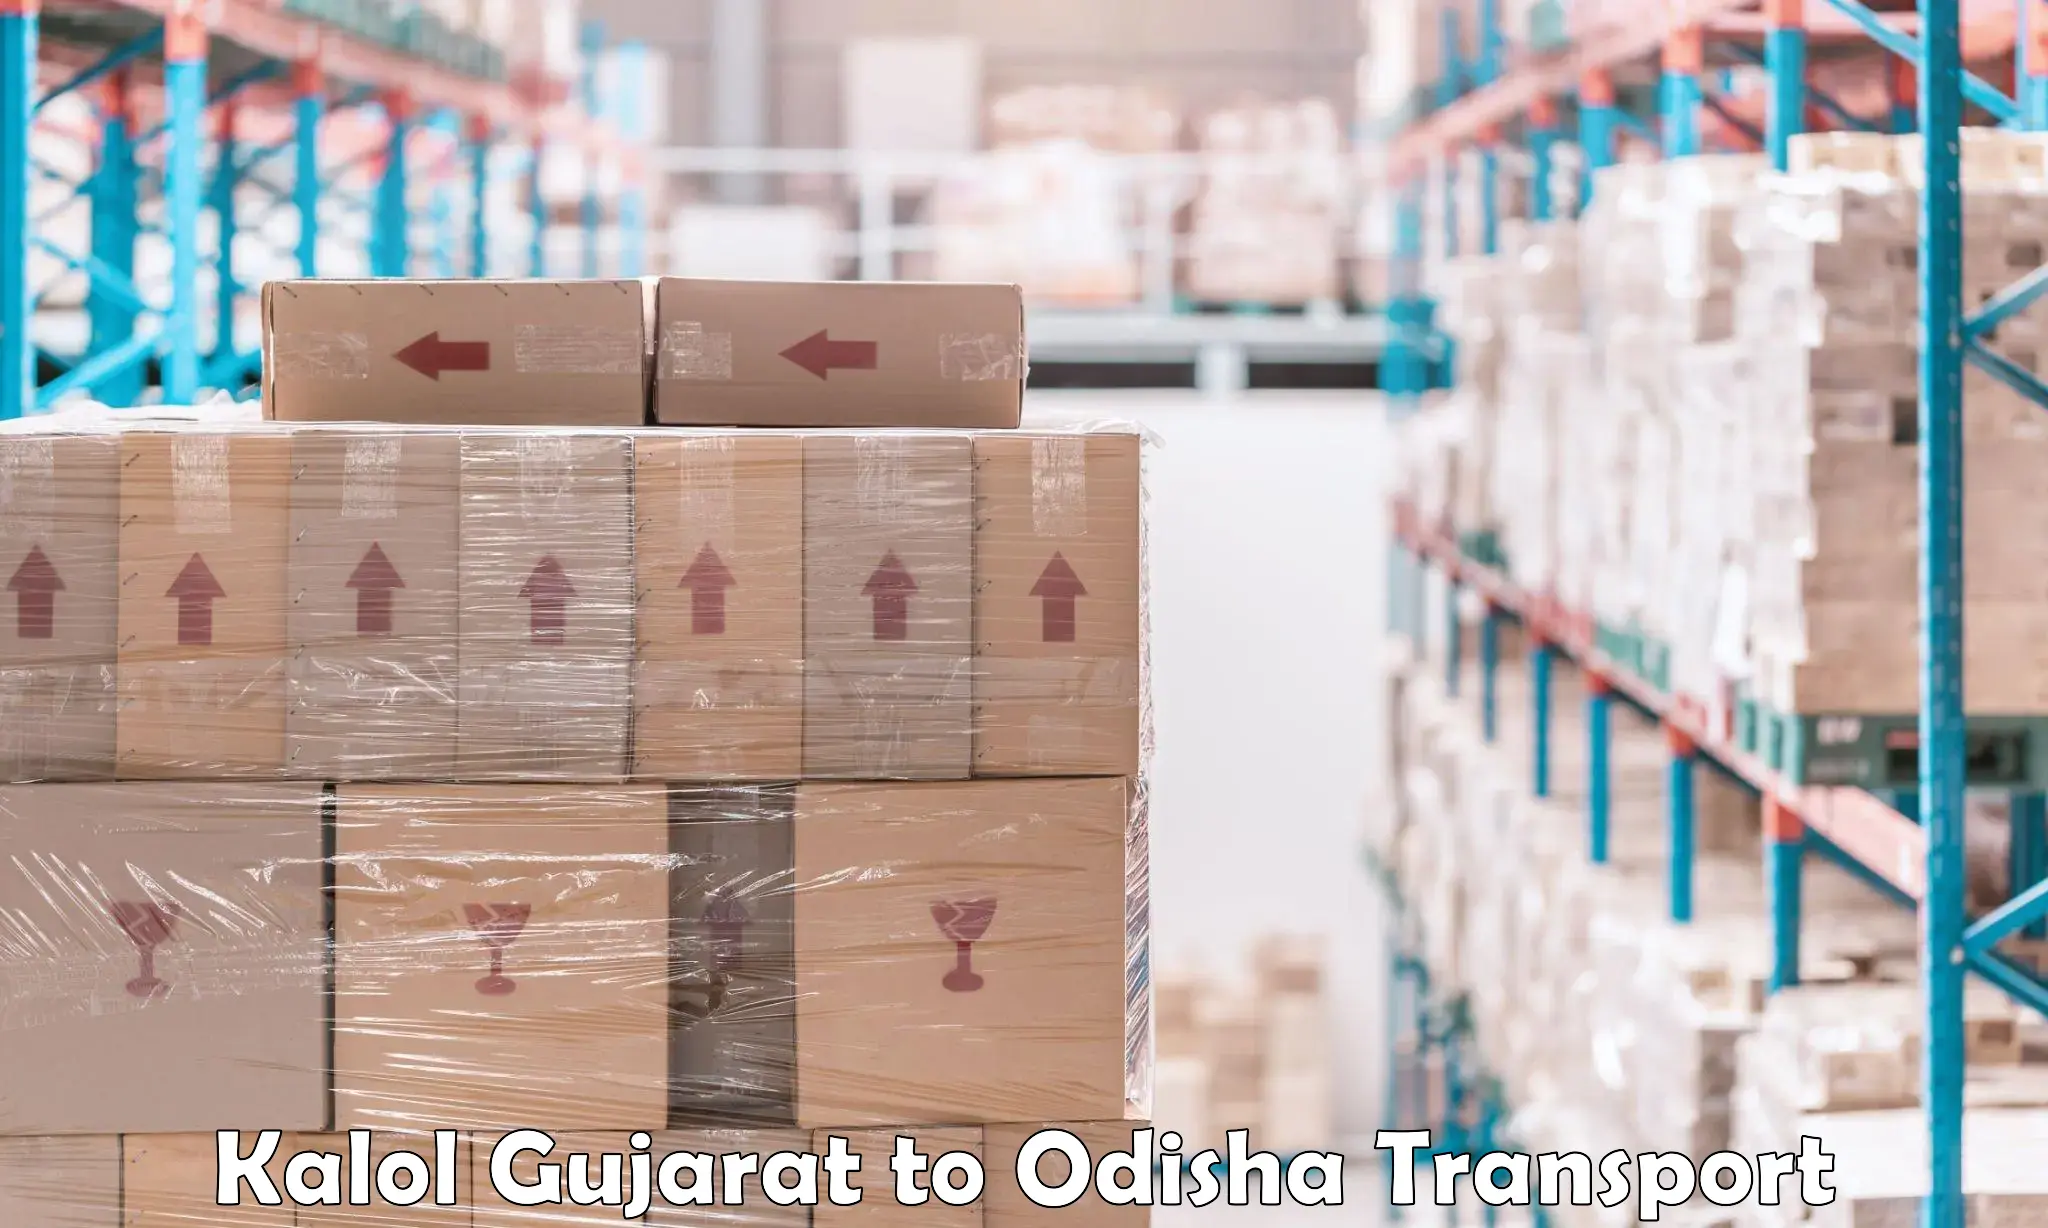 International cargo transportation services Kalol Gujarat to Bhubaneswar